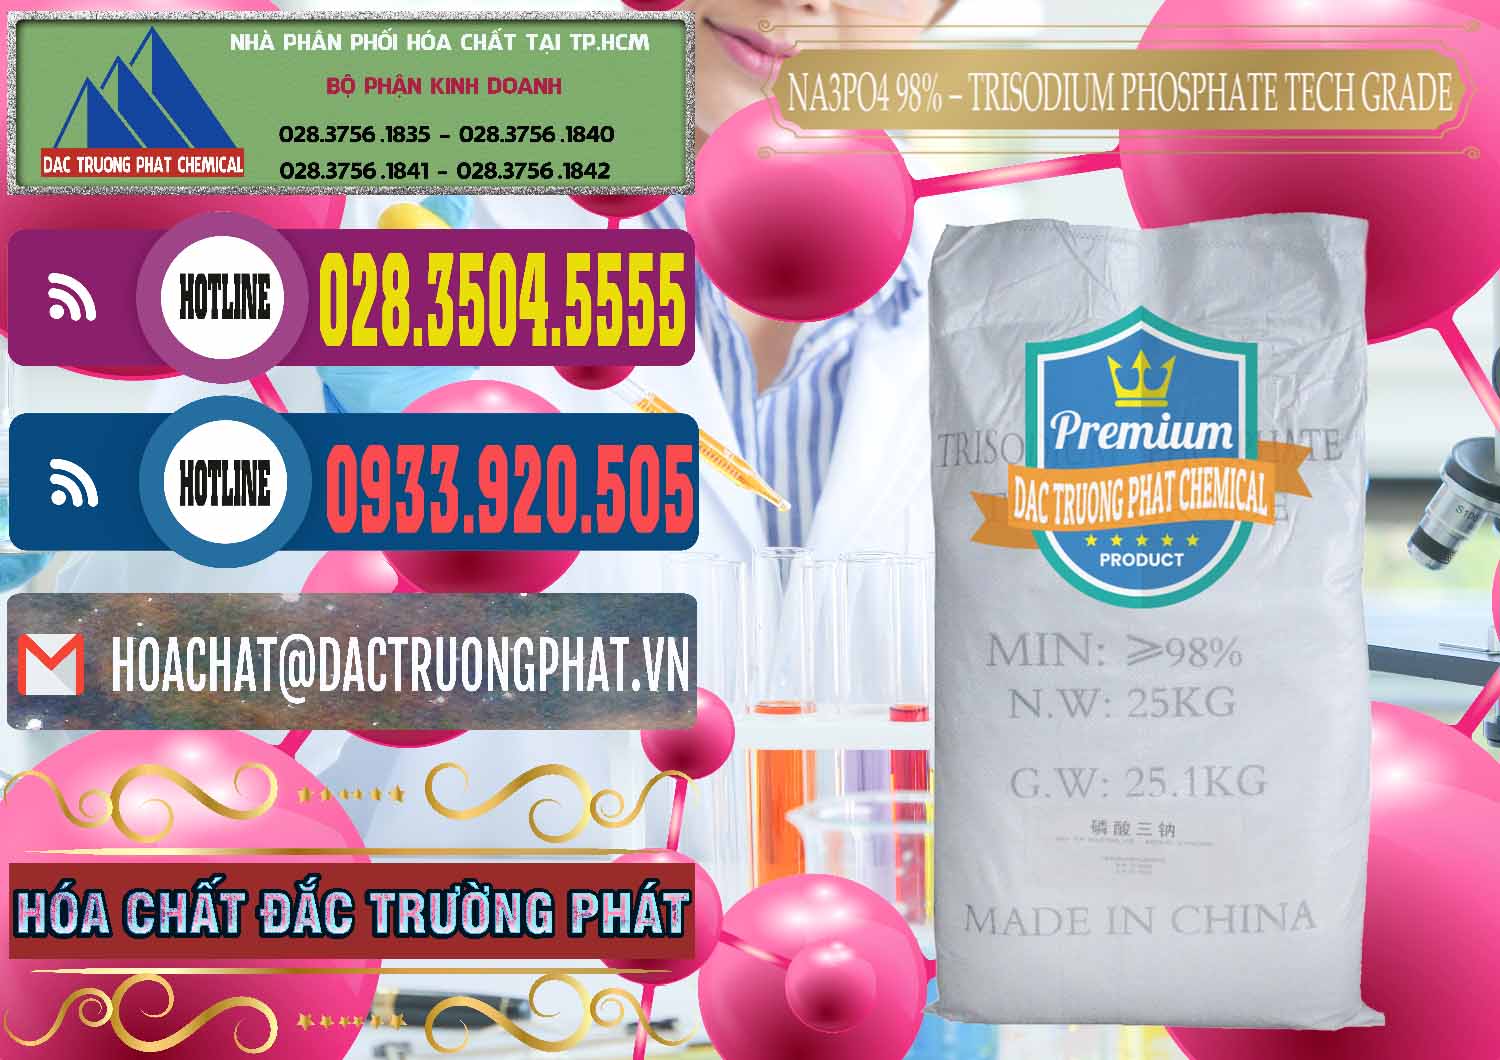 Cty chuyên cung ứng _ bán Na3PO4 – Trisodium Phosphate 96% Tech Grade Trung Quốc China - 0104 - Nhà cung cấp ( phân phối ) hóa chất tại TP.HCM - muabanhoachat.com.vn